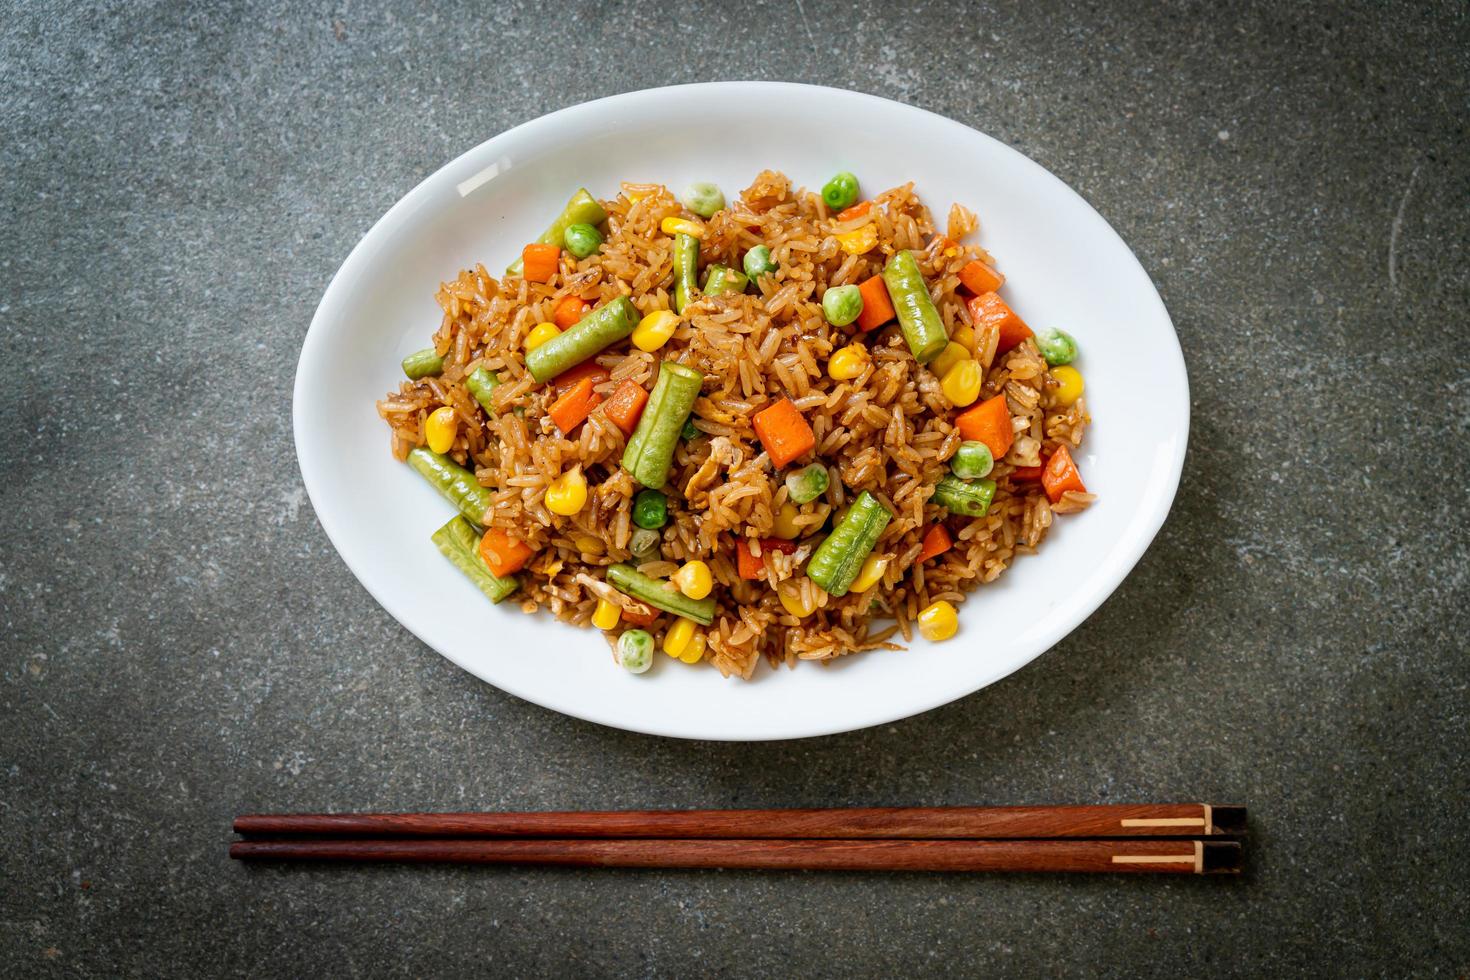 arroz frito com ervilhas, cenouras e milho - estilo de comida vegetariana e saudável foto